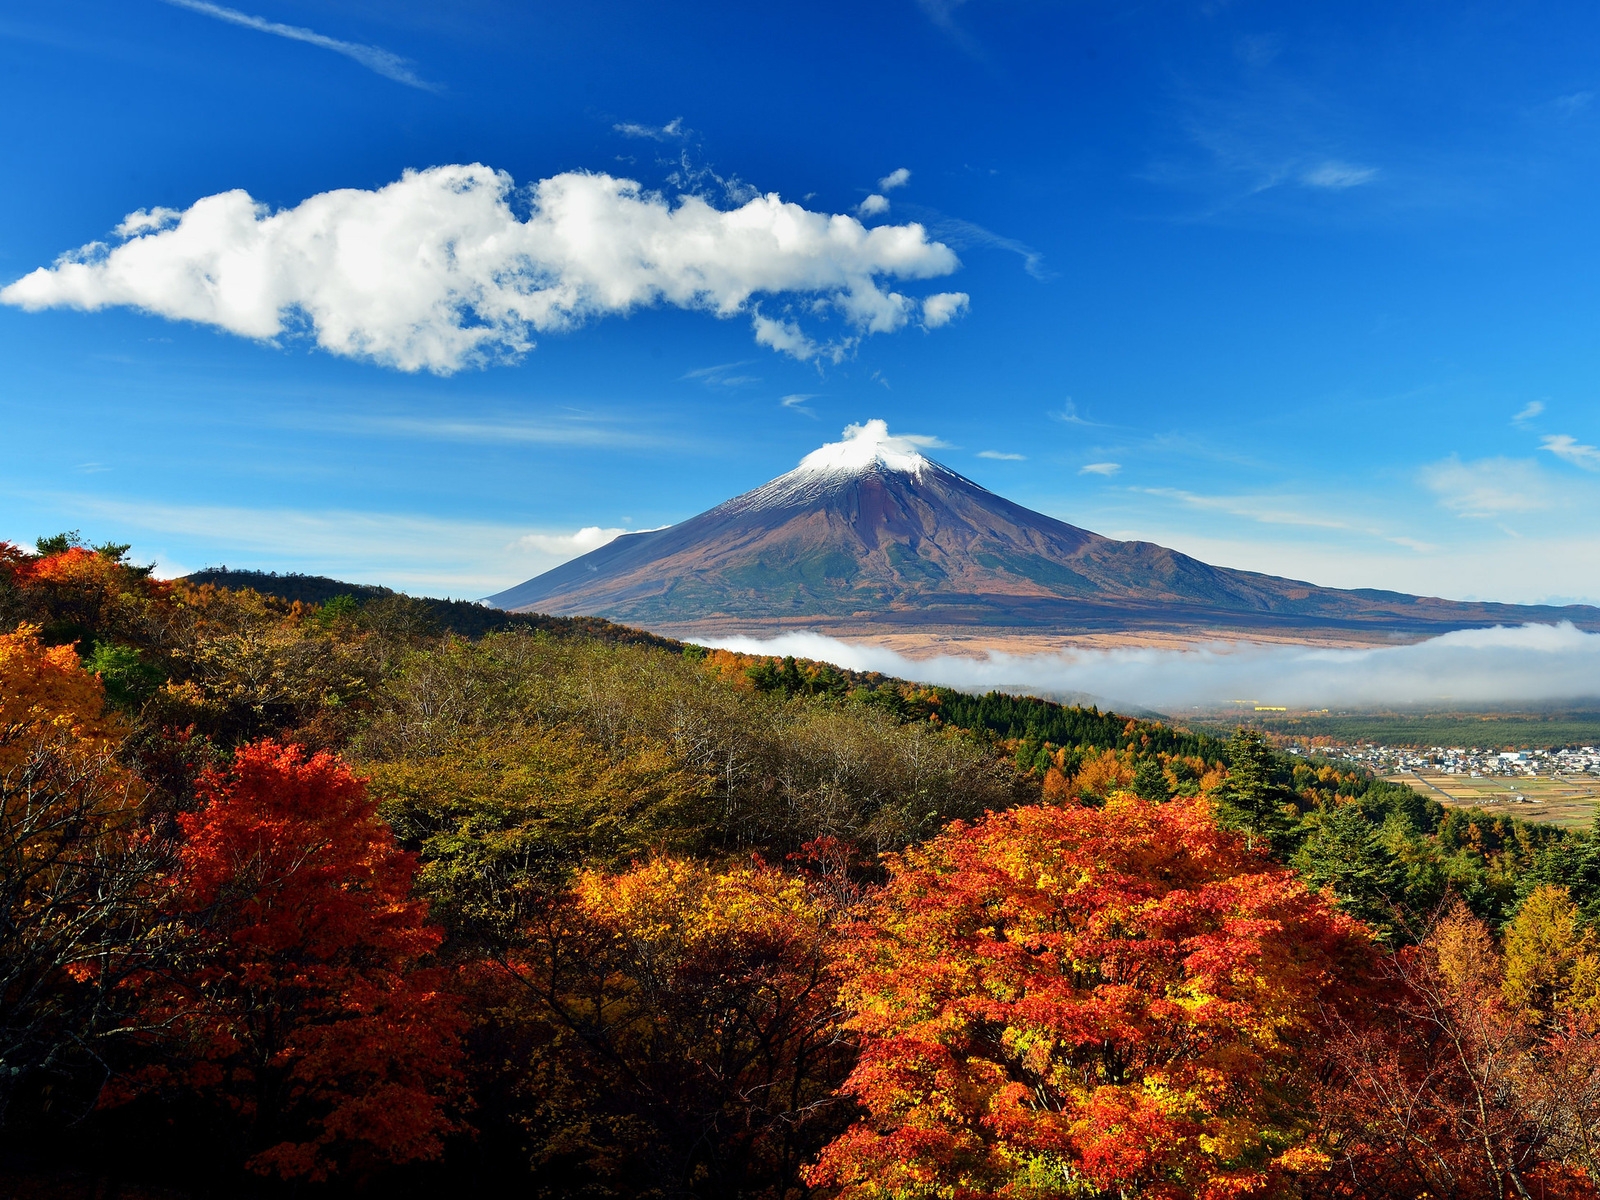 BANCO DE IMÁGENES GRATIS: Monte Fuji en Japón - Fuji Mount in Japan